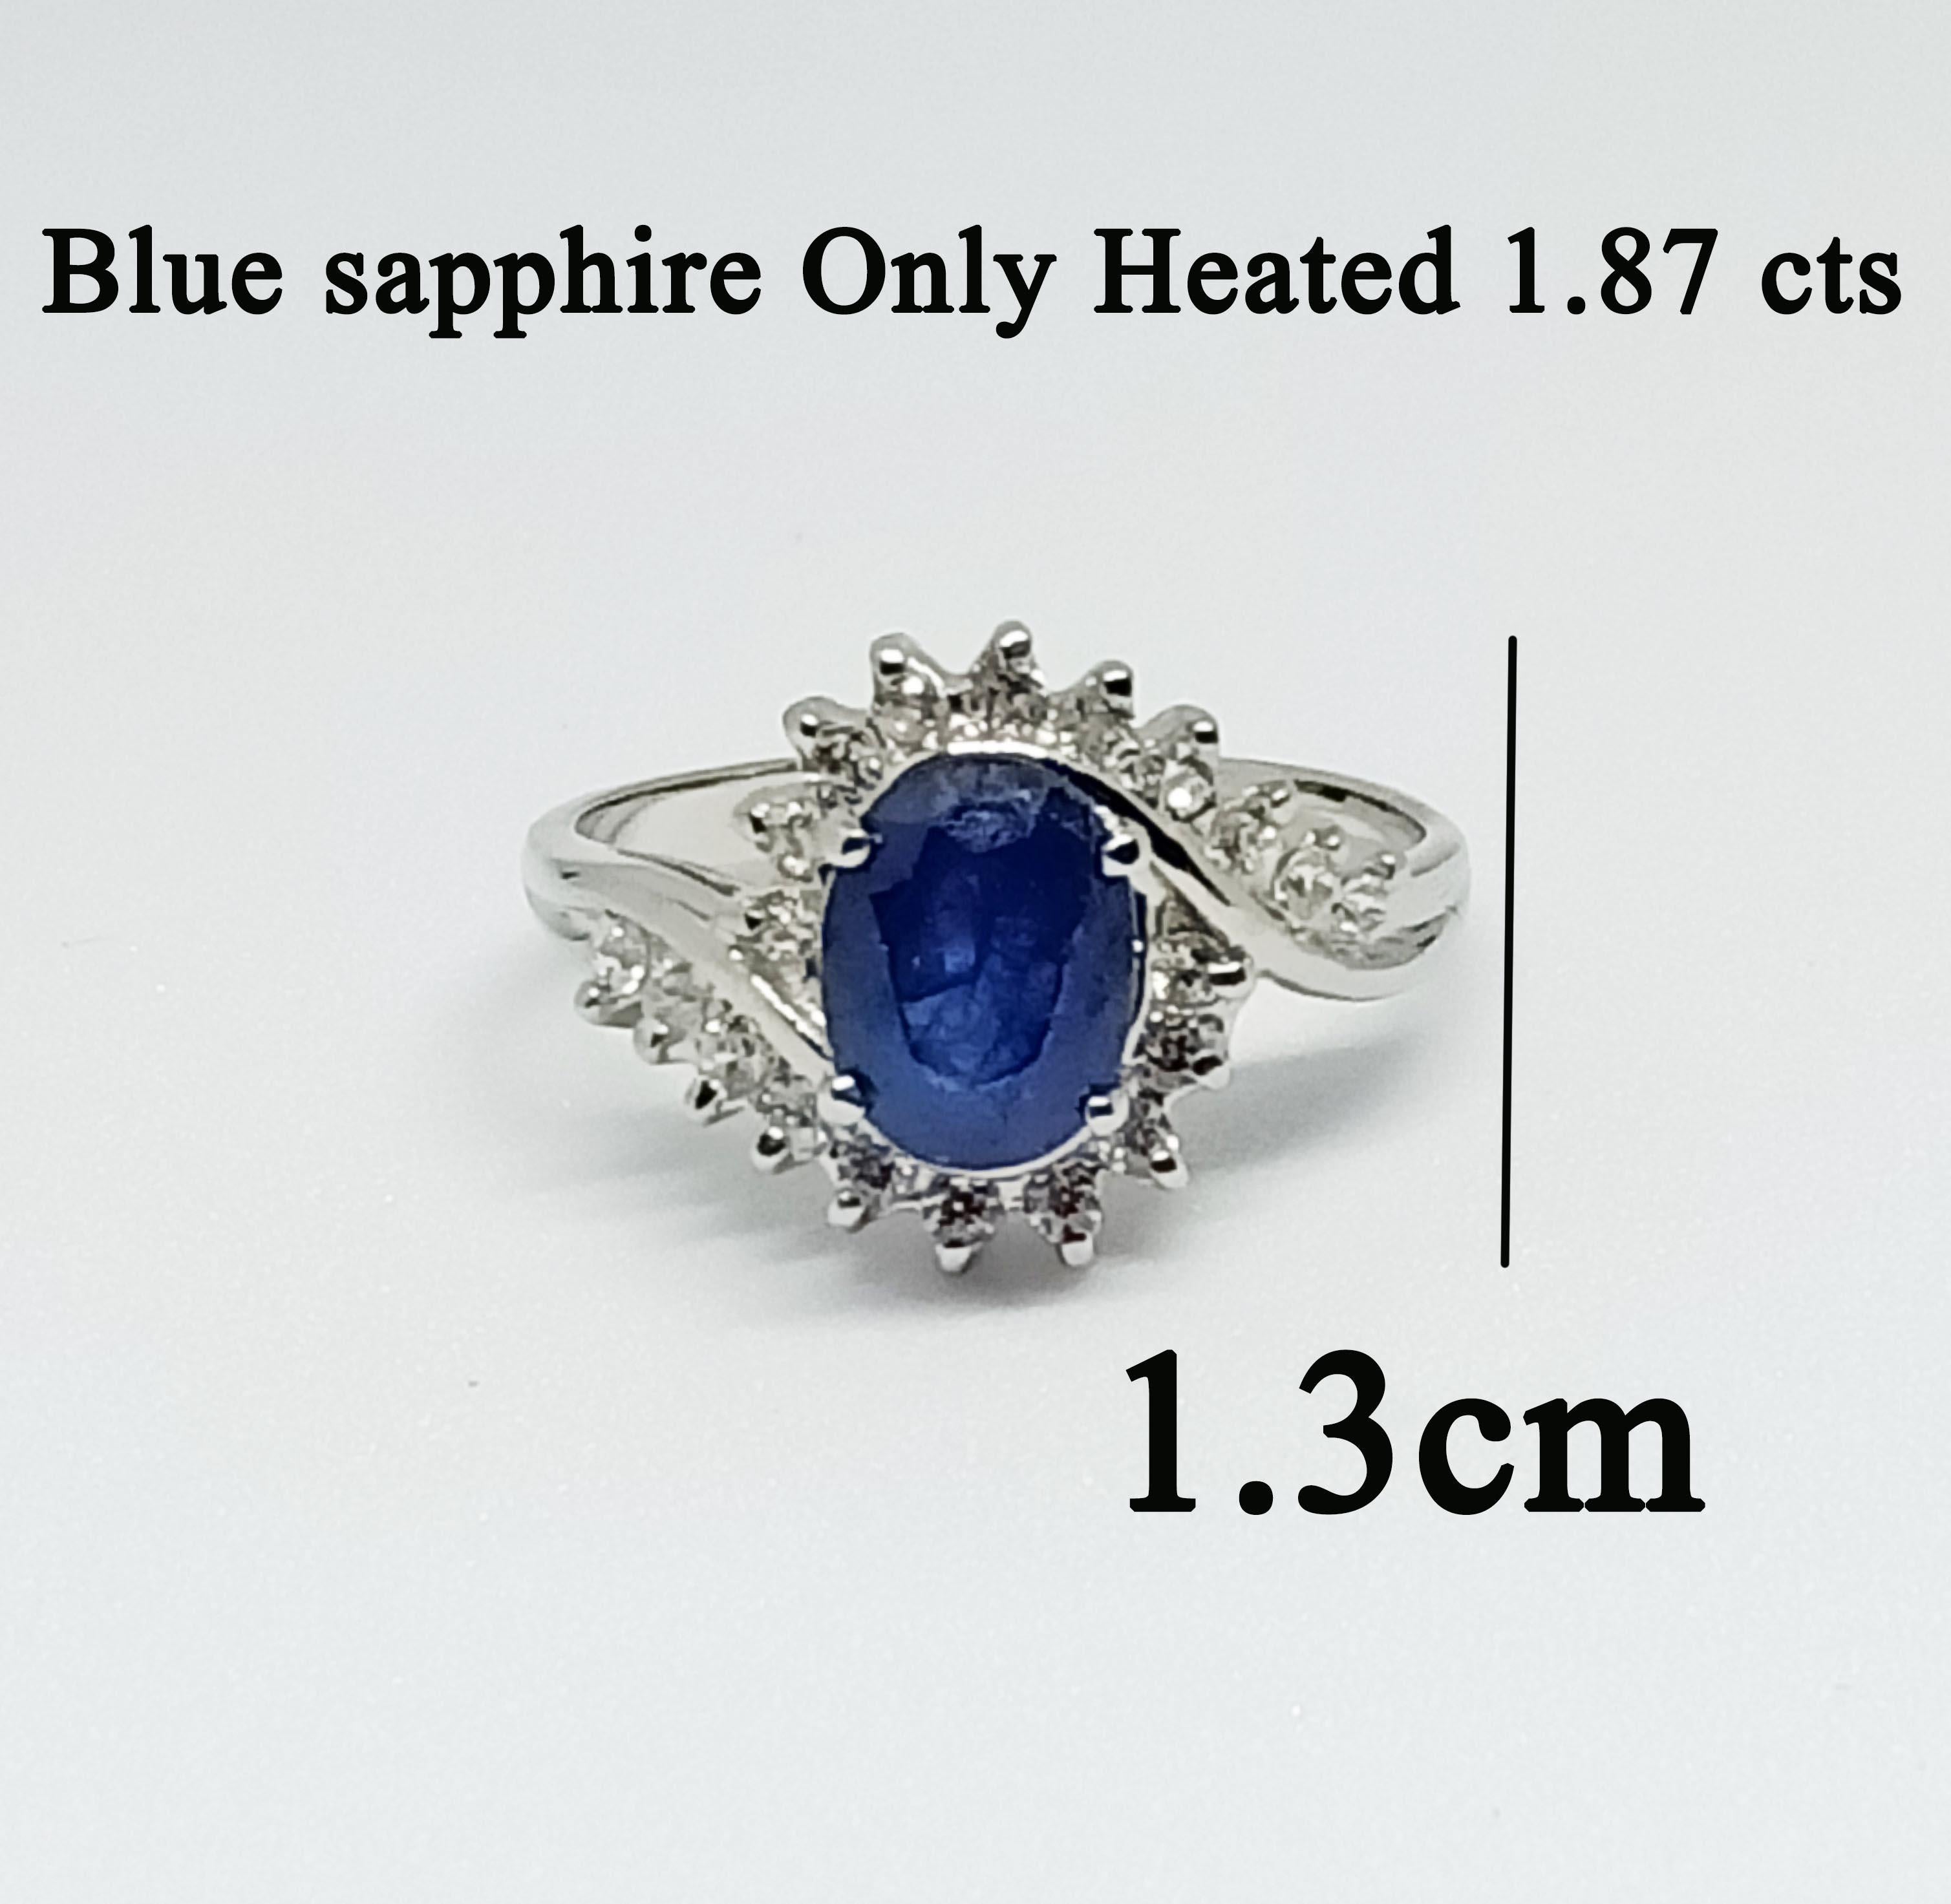 Saphir bleu 1,87cts Seulement ovale chauffé 8x6 mm. 
Zircon blanc rond 1,50 mm. 18 pièces
Plaqué or blanc sur argent sterling
Métal : argent
